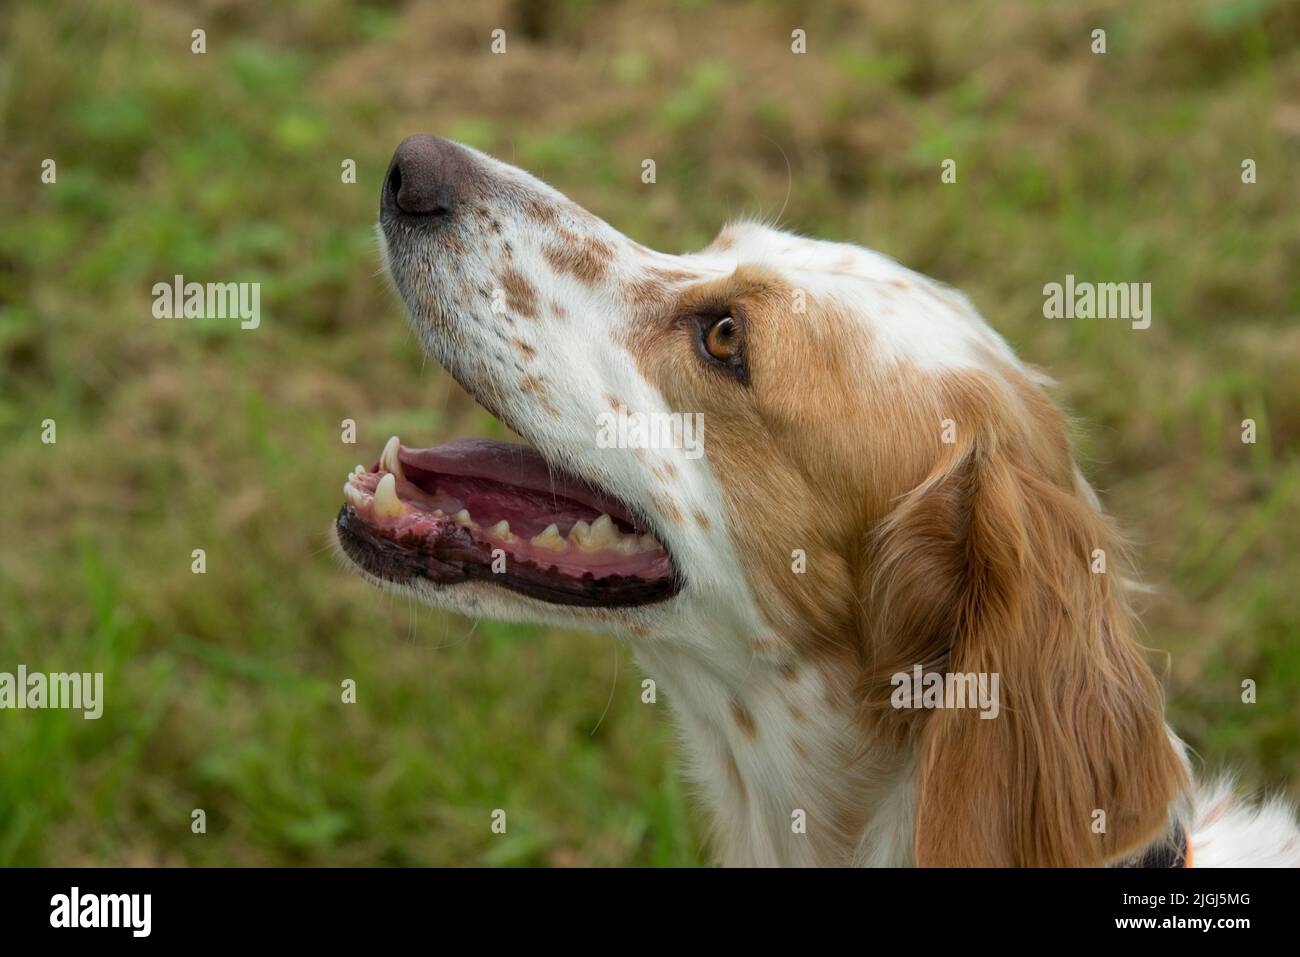 Tête d'une chienne anglaise, mâchoires légèrement ouvertes avec des yeux bruns et bruns regardant attentivement, Berkshire, août Banque D'Images